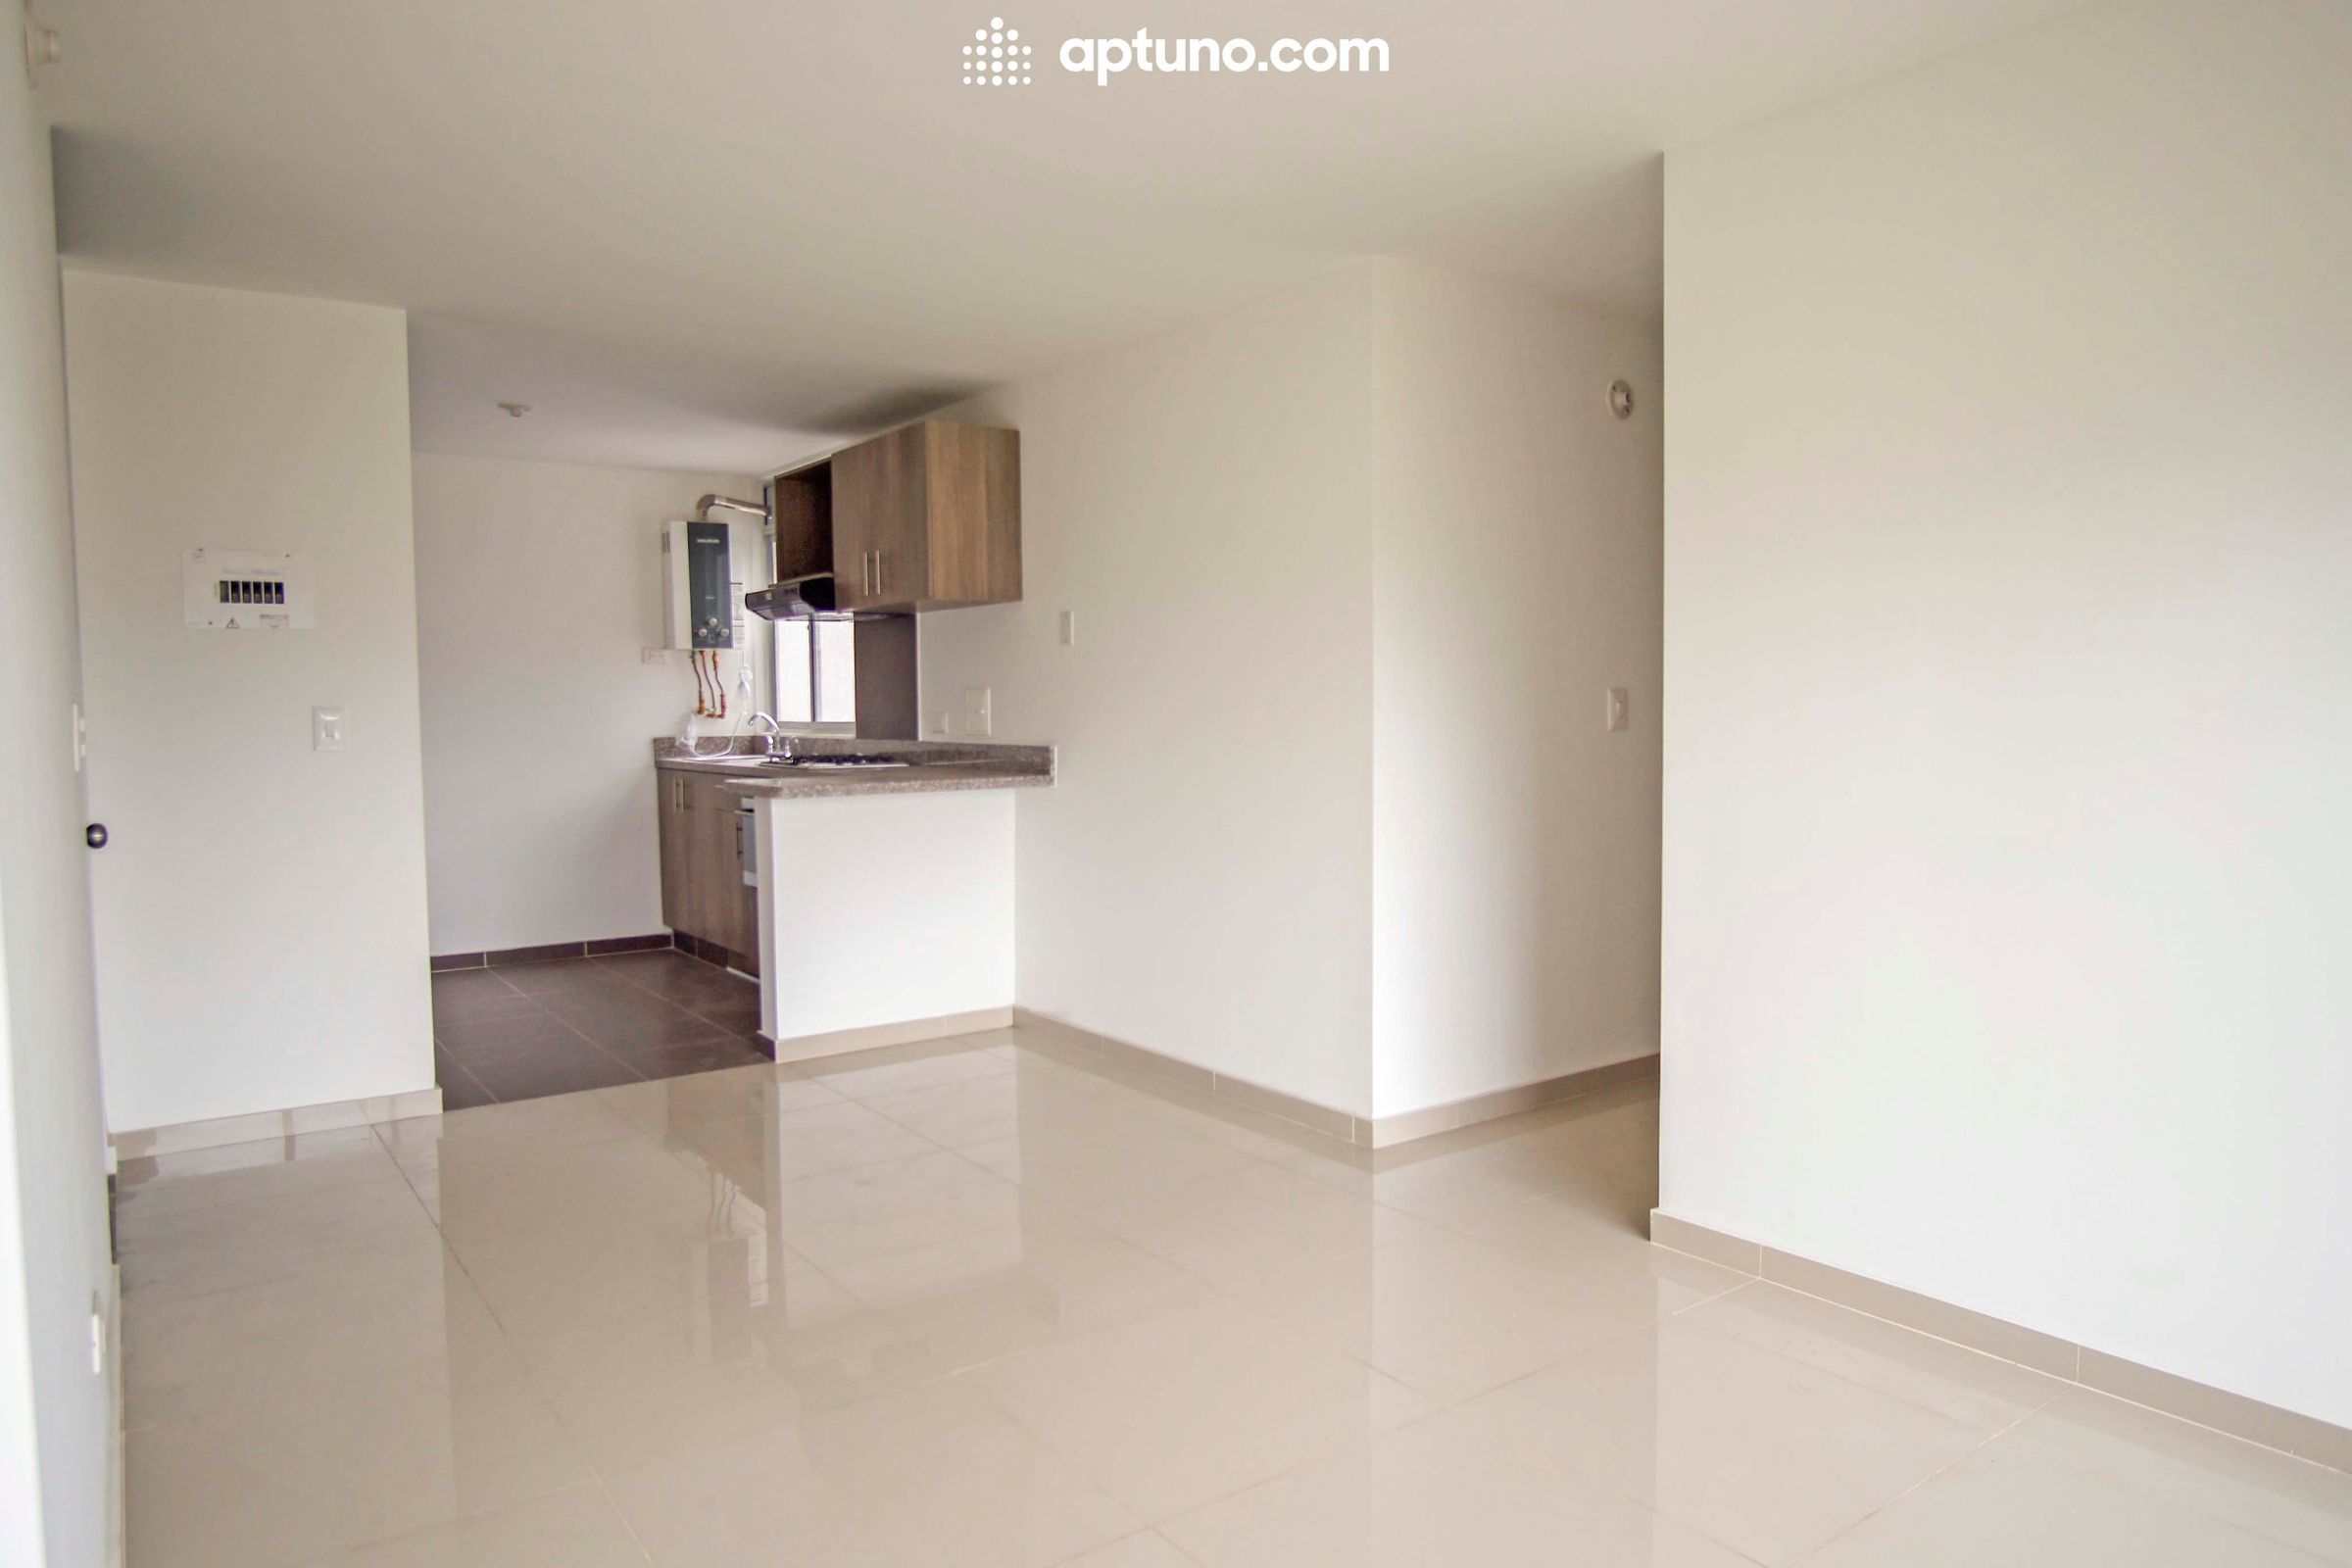 Apartamento en arriendo Tocancipá 64 m² - $ 1.000.000,00